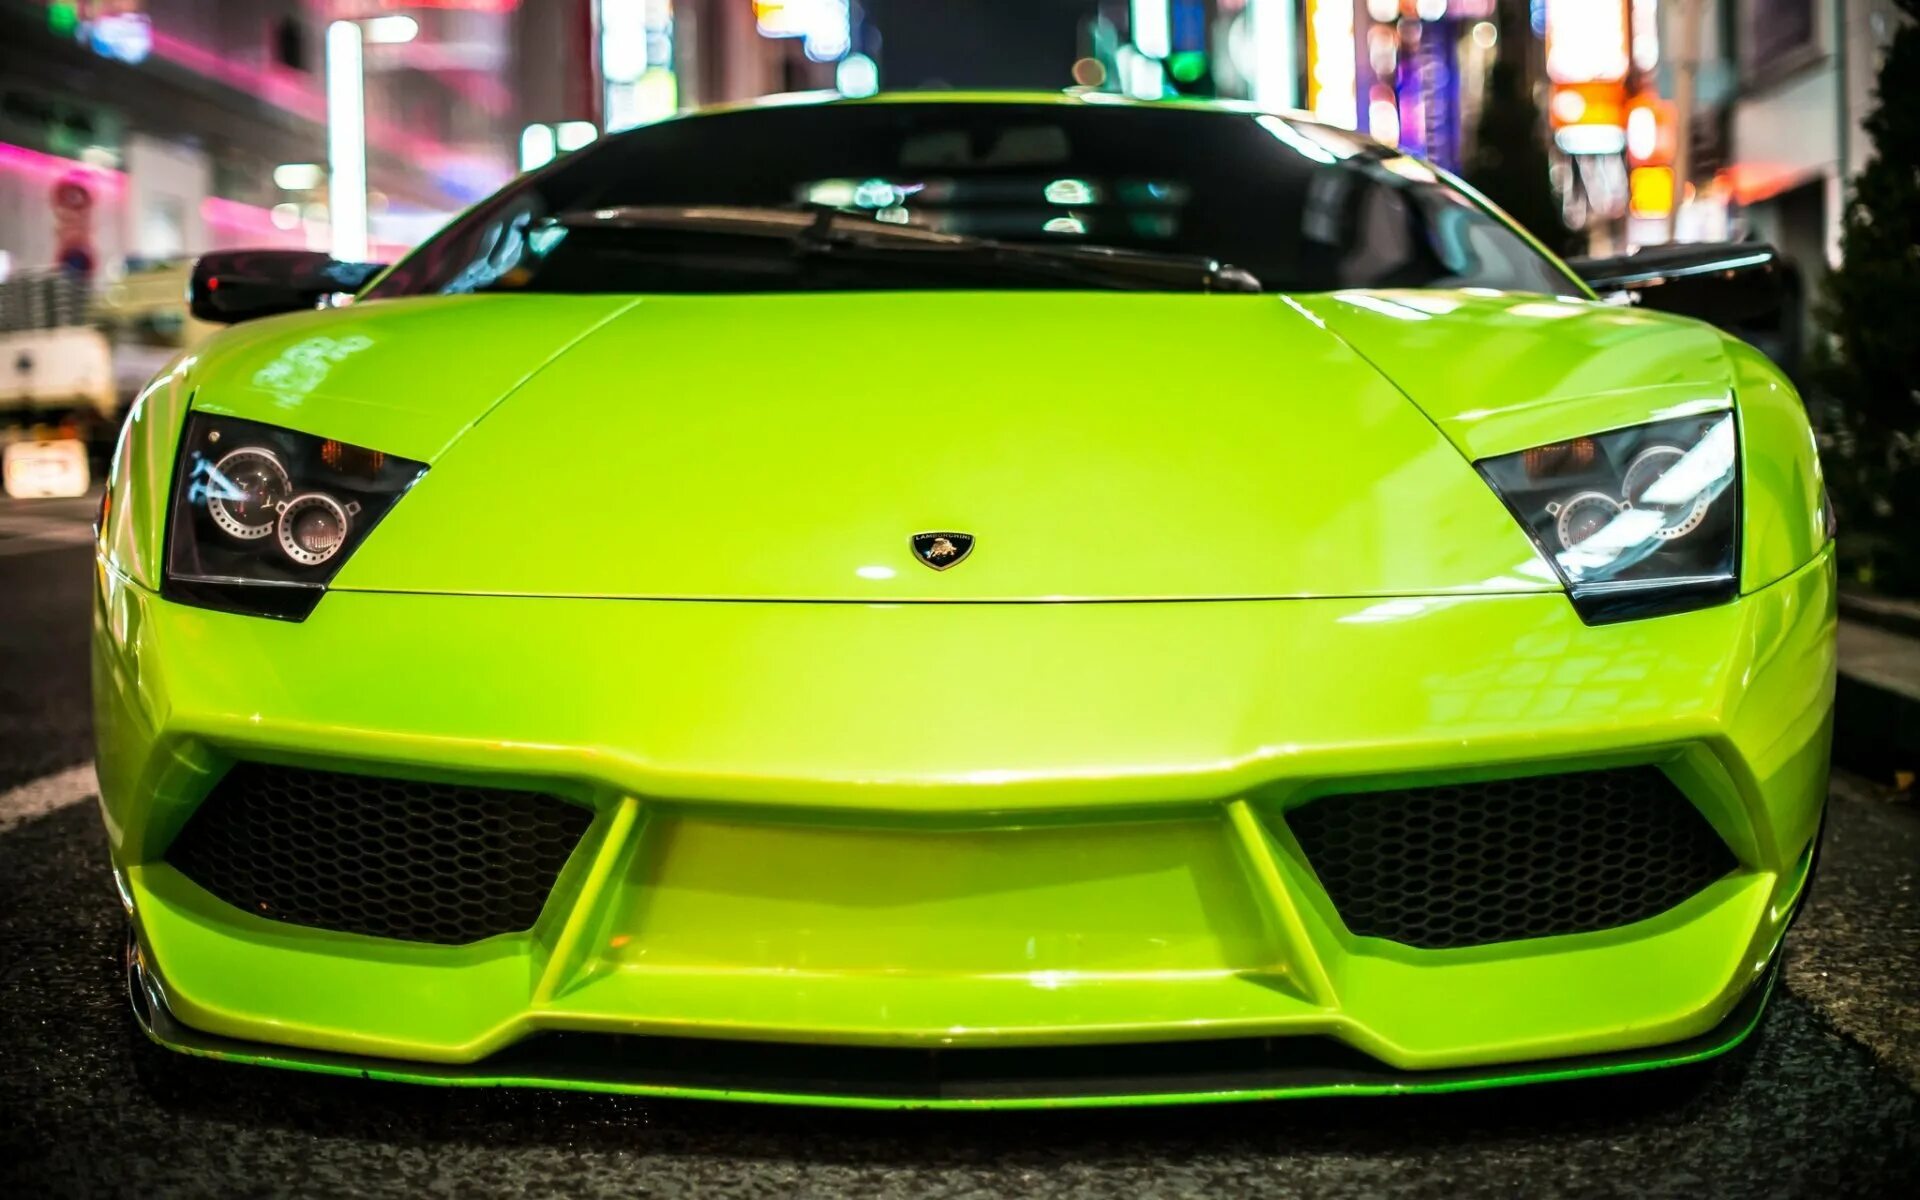 Ламборджини Галлардо салатовая. Lamborghini Gallardo зеленый. Кислотно-зелёный Ламборджини. Ламборджини Галлардо фары.